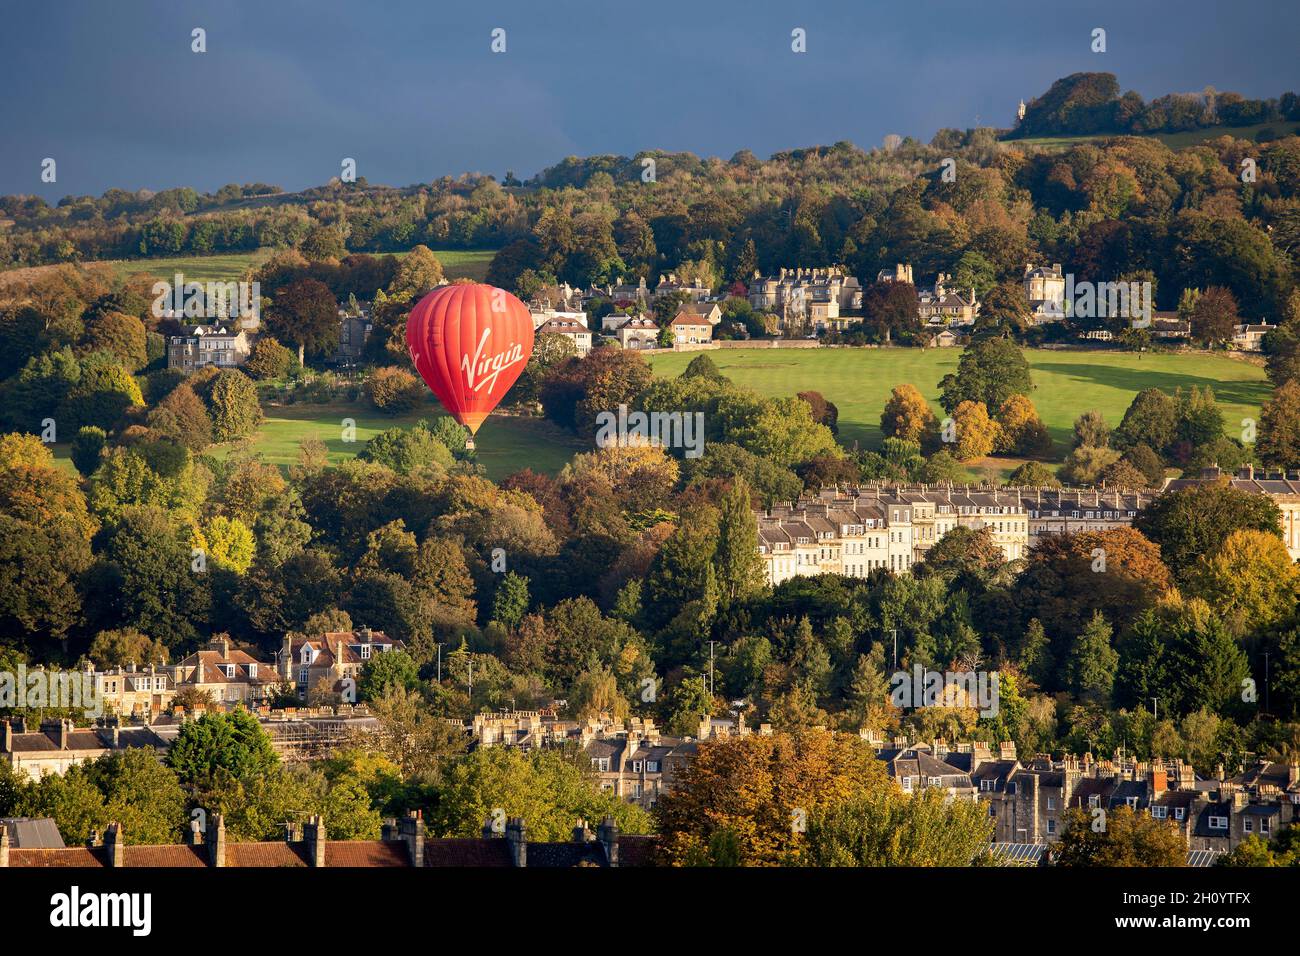 BATH, Reino Unido - 14 DE OCTUBRE de 2021 : Un globo de aire caliente de marca virgen roja despida del Royal Victoria Park en una soleada mañana otoñal. Foto de stock